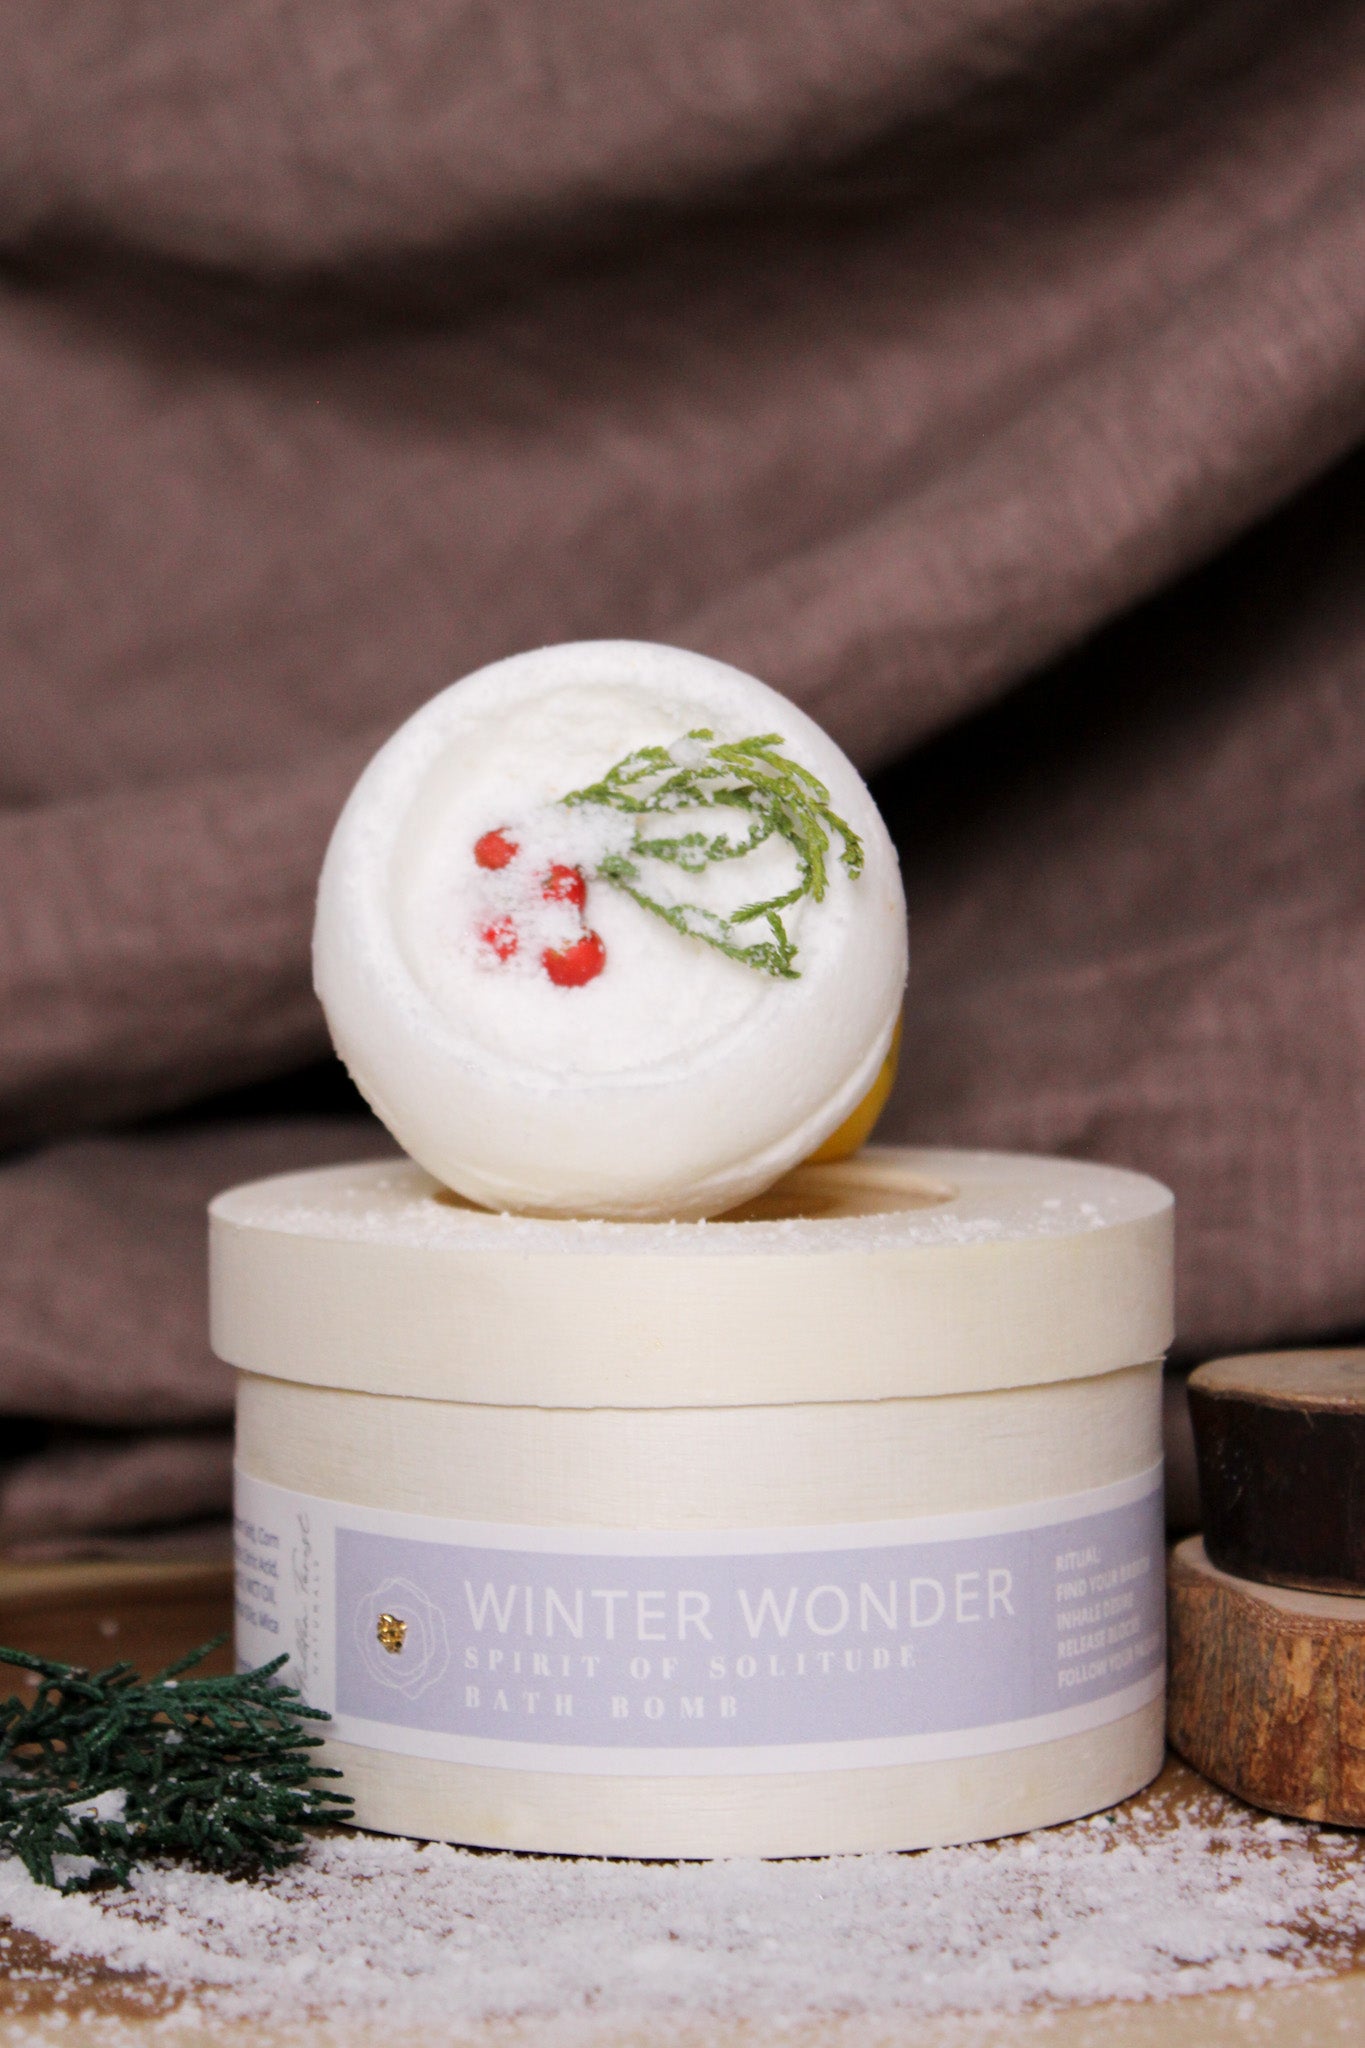 Winter Wonder Bath Bomb - Handmade with Natural Ingredients. Hidden Forest Naturals